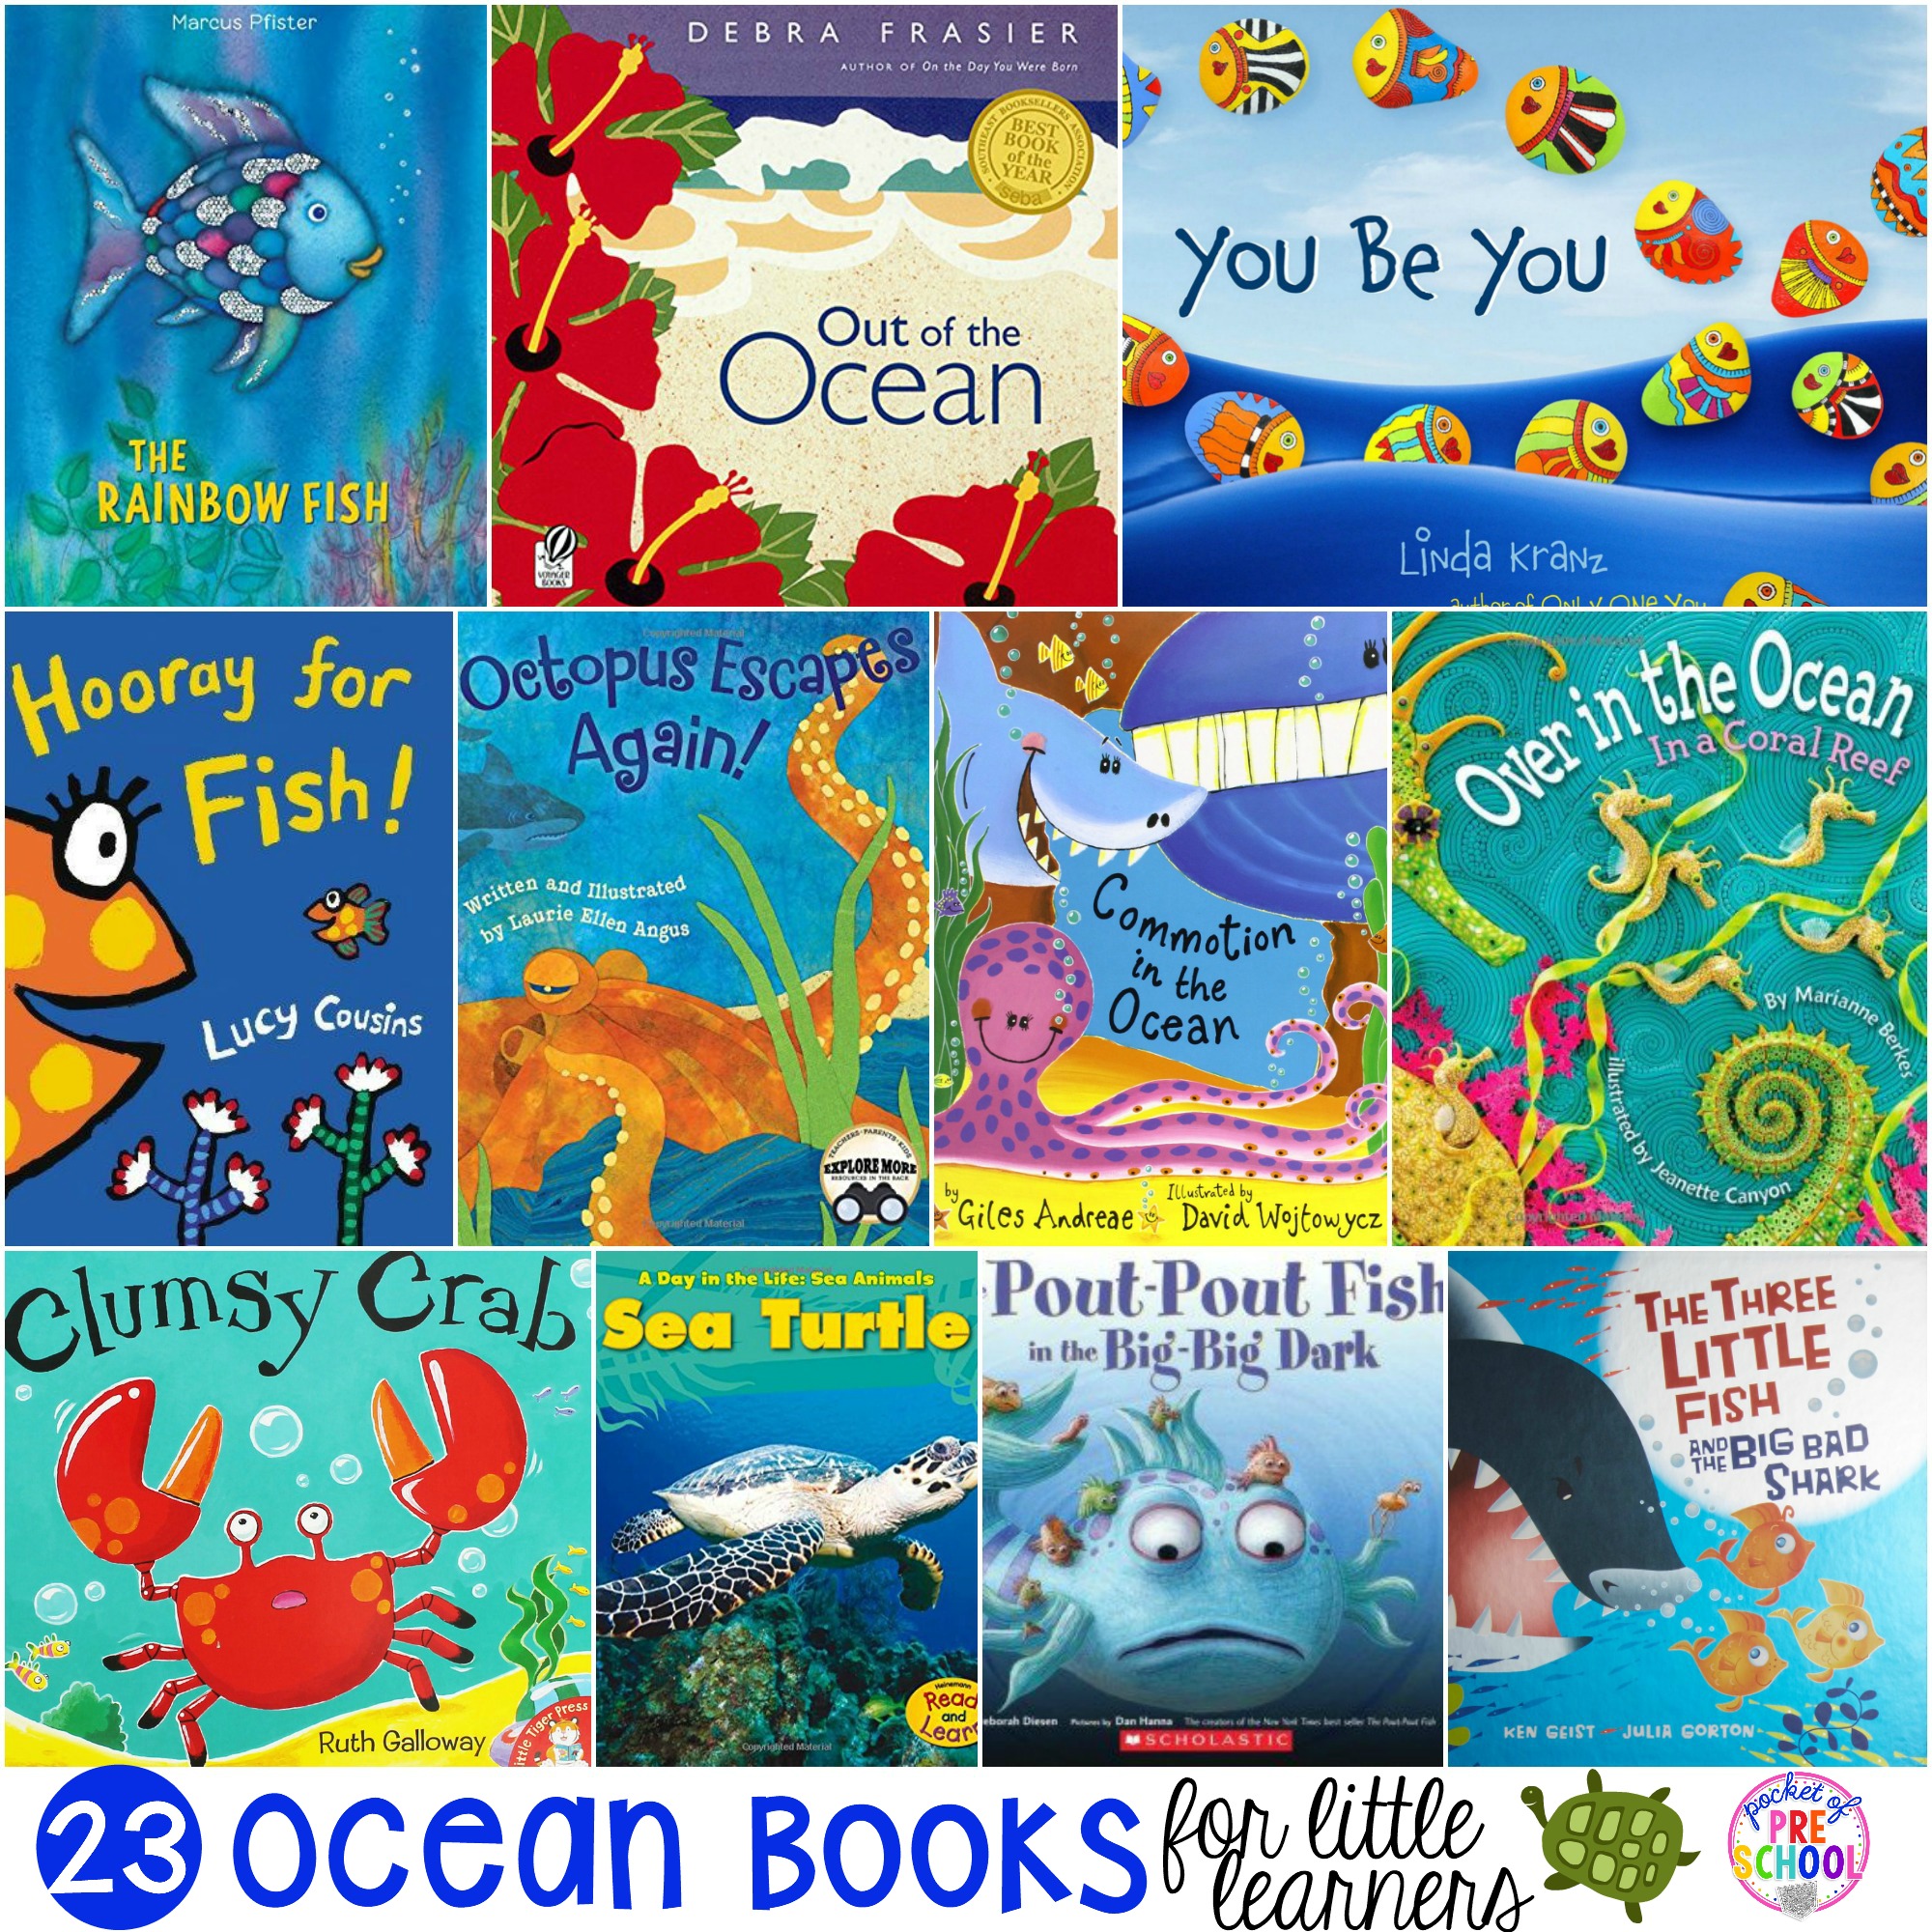 HUGE ocean book list my preschool & pre-k students love and we love reading at circle time. #oceanbooks #preschool #prek #oceantheme